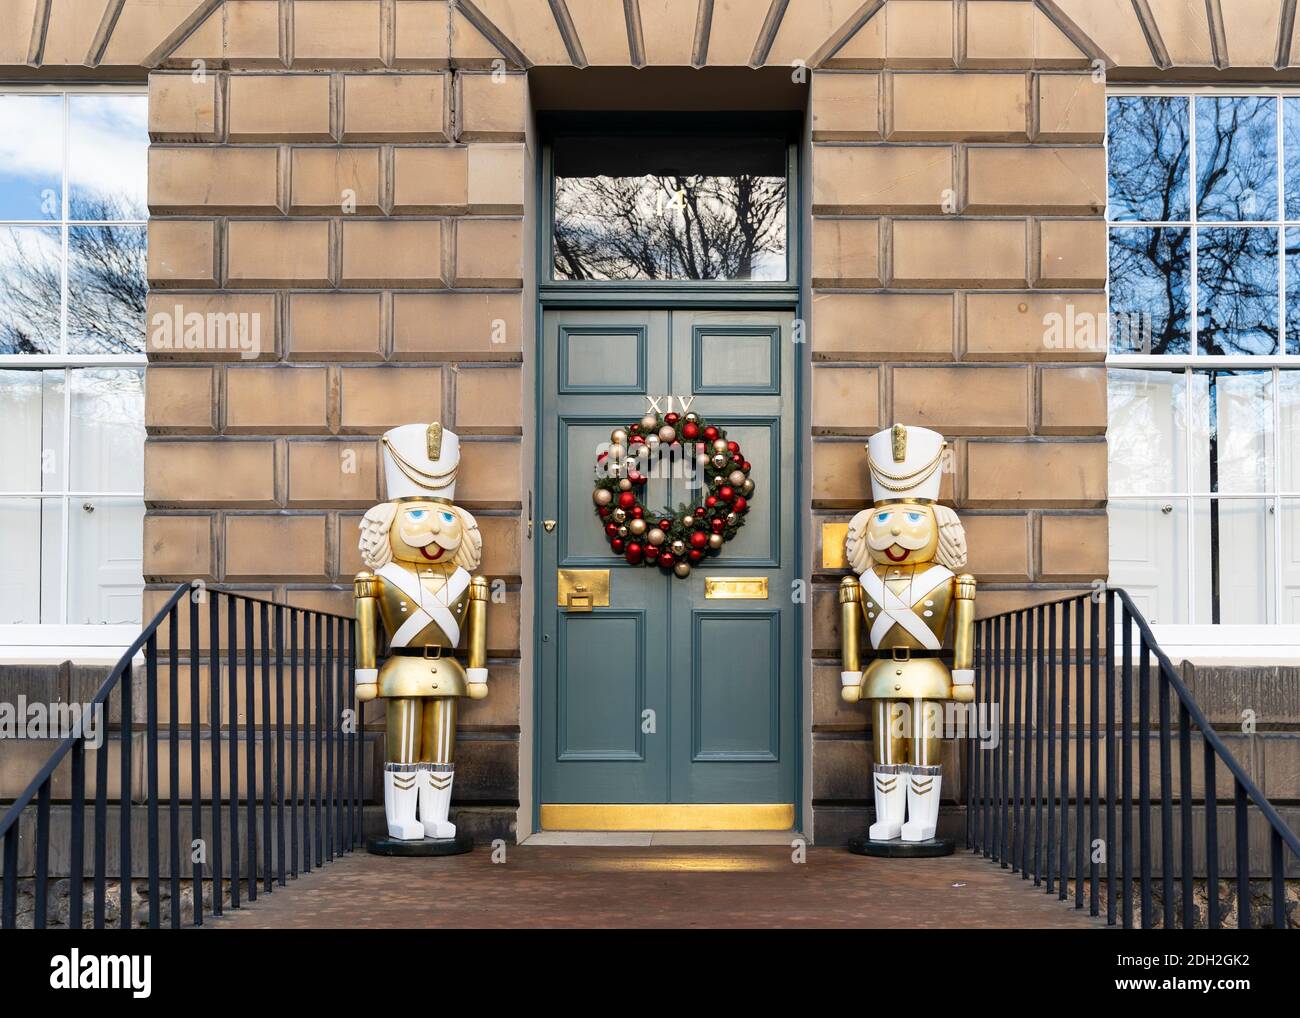 Détail de la couronne de Noël traditionnelle et de grandes statues décoratives à l'entrée de la maison dans la Nouvelle ville d'Édimbourg, Écosse, Royaume-Uni Banque D'Images